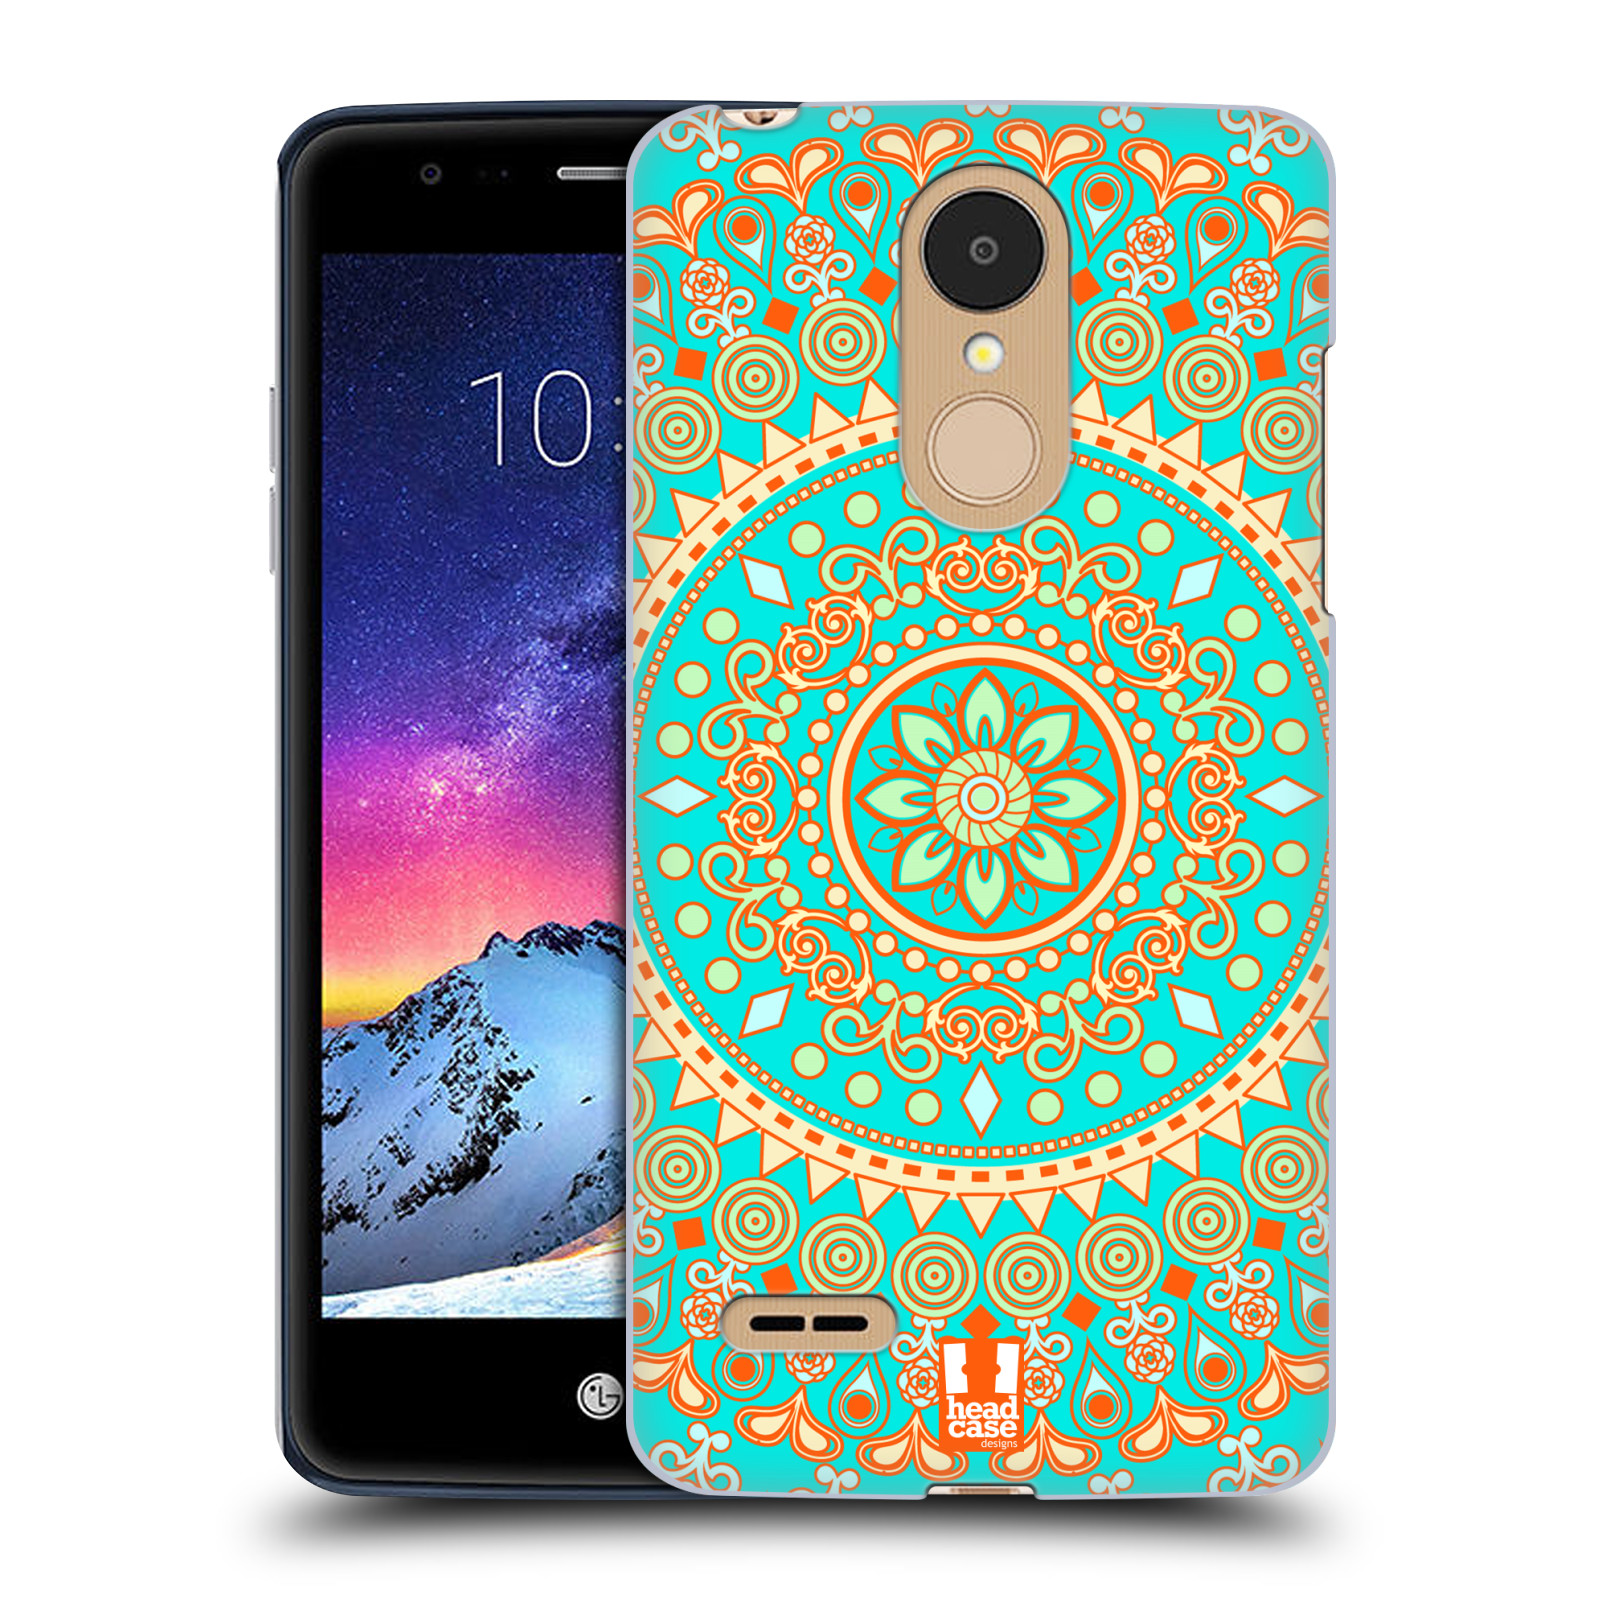 HEAD CASE plastový obal na mobil LG K9 / K8 2018 vzor Indie Mandala slunce barevný motiv TYRKYSOVÁ, ZELENÁ